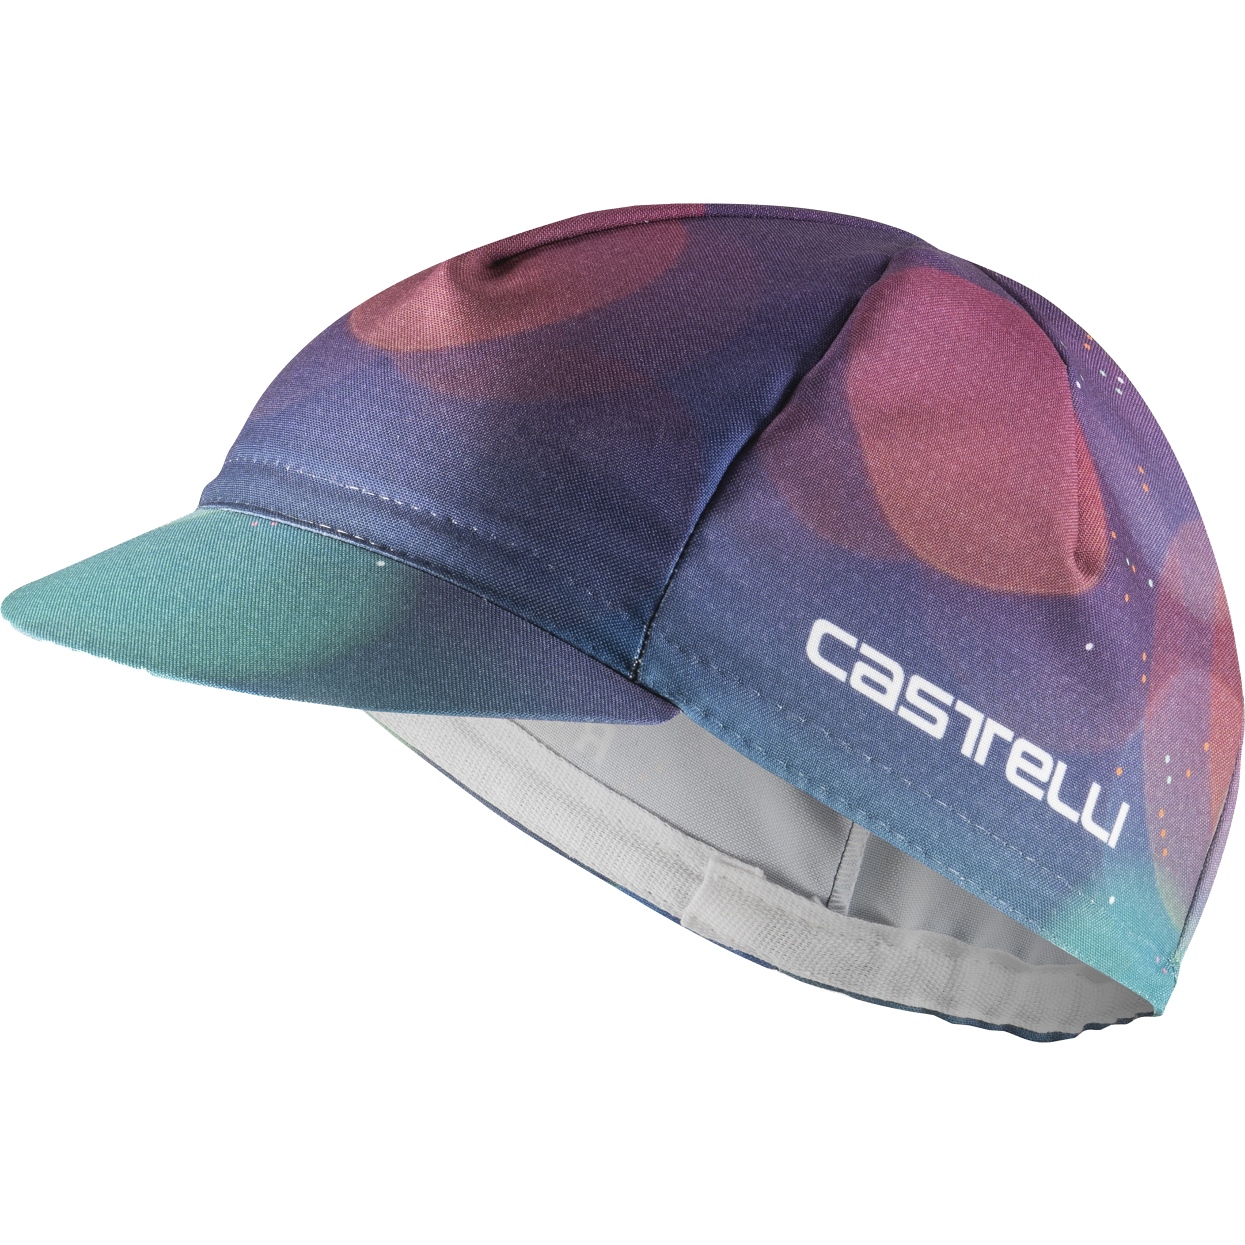 Produktbild von Castelli R-A/D Radmütze - multicolor purple 990